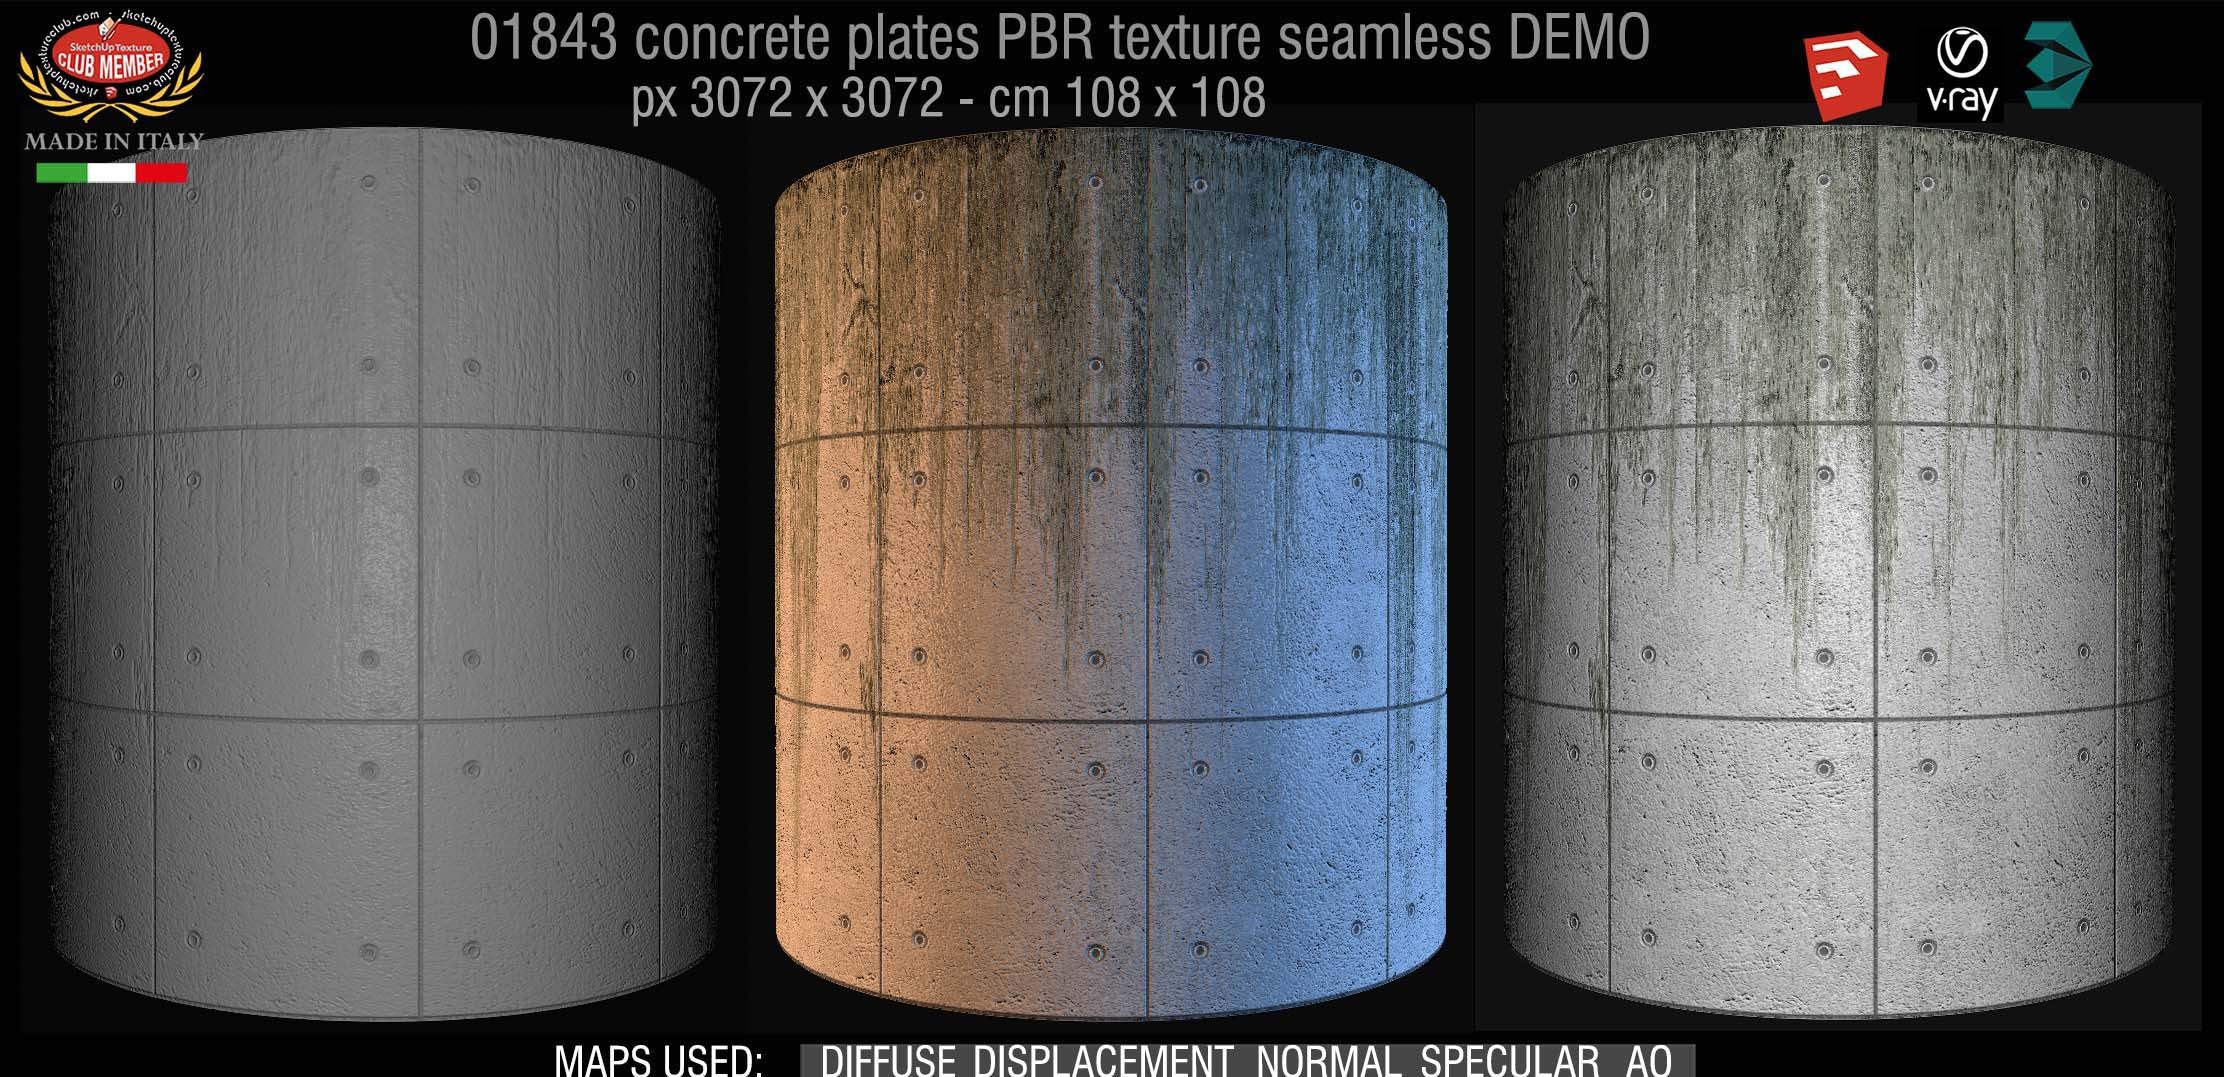 01843 Tadao Ando concrete plates PBR texture seamless DEMO